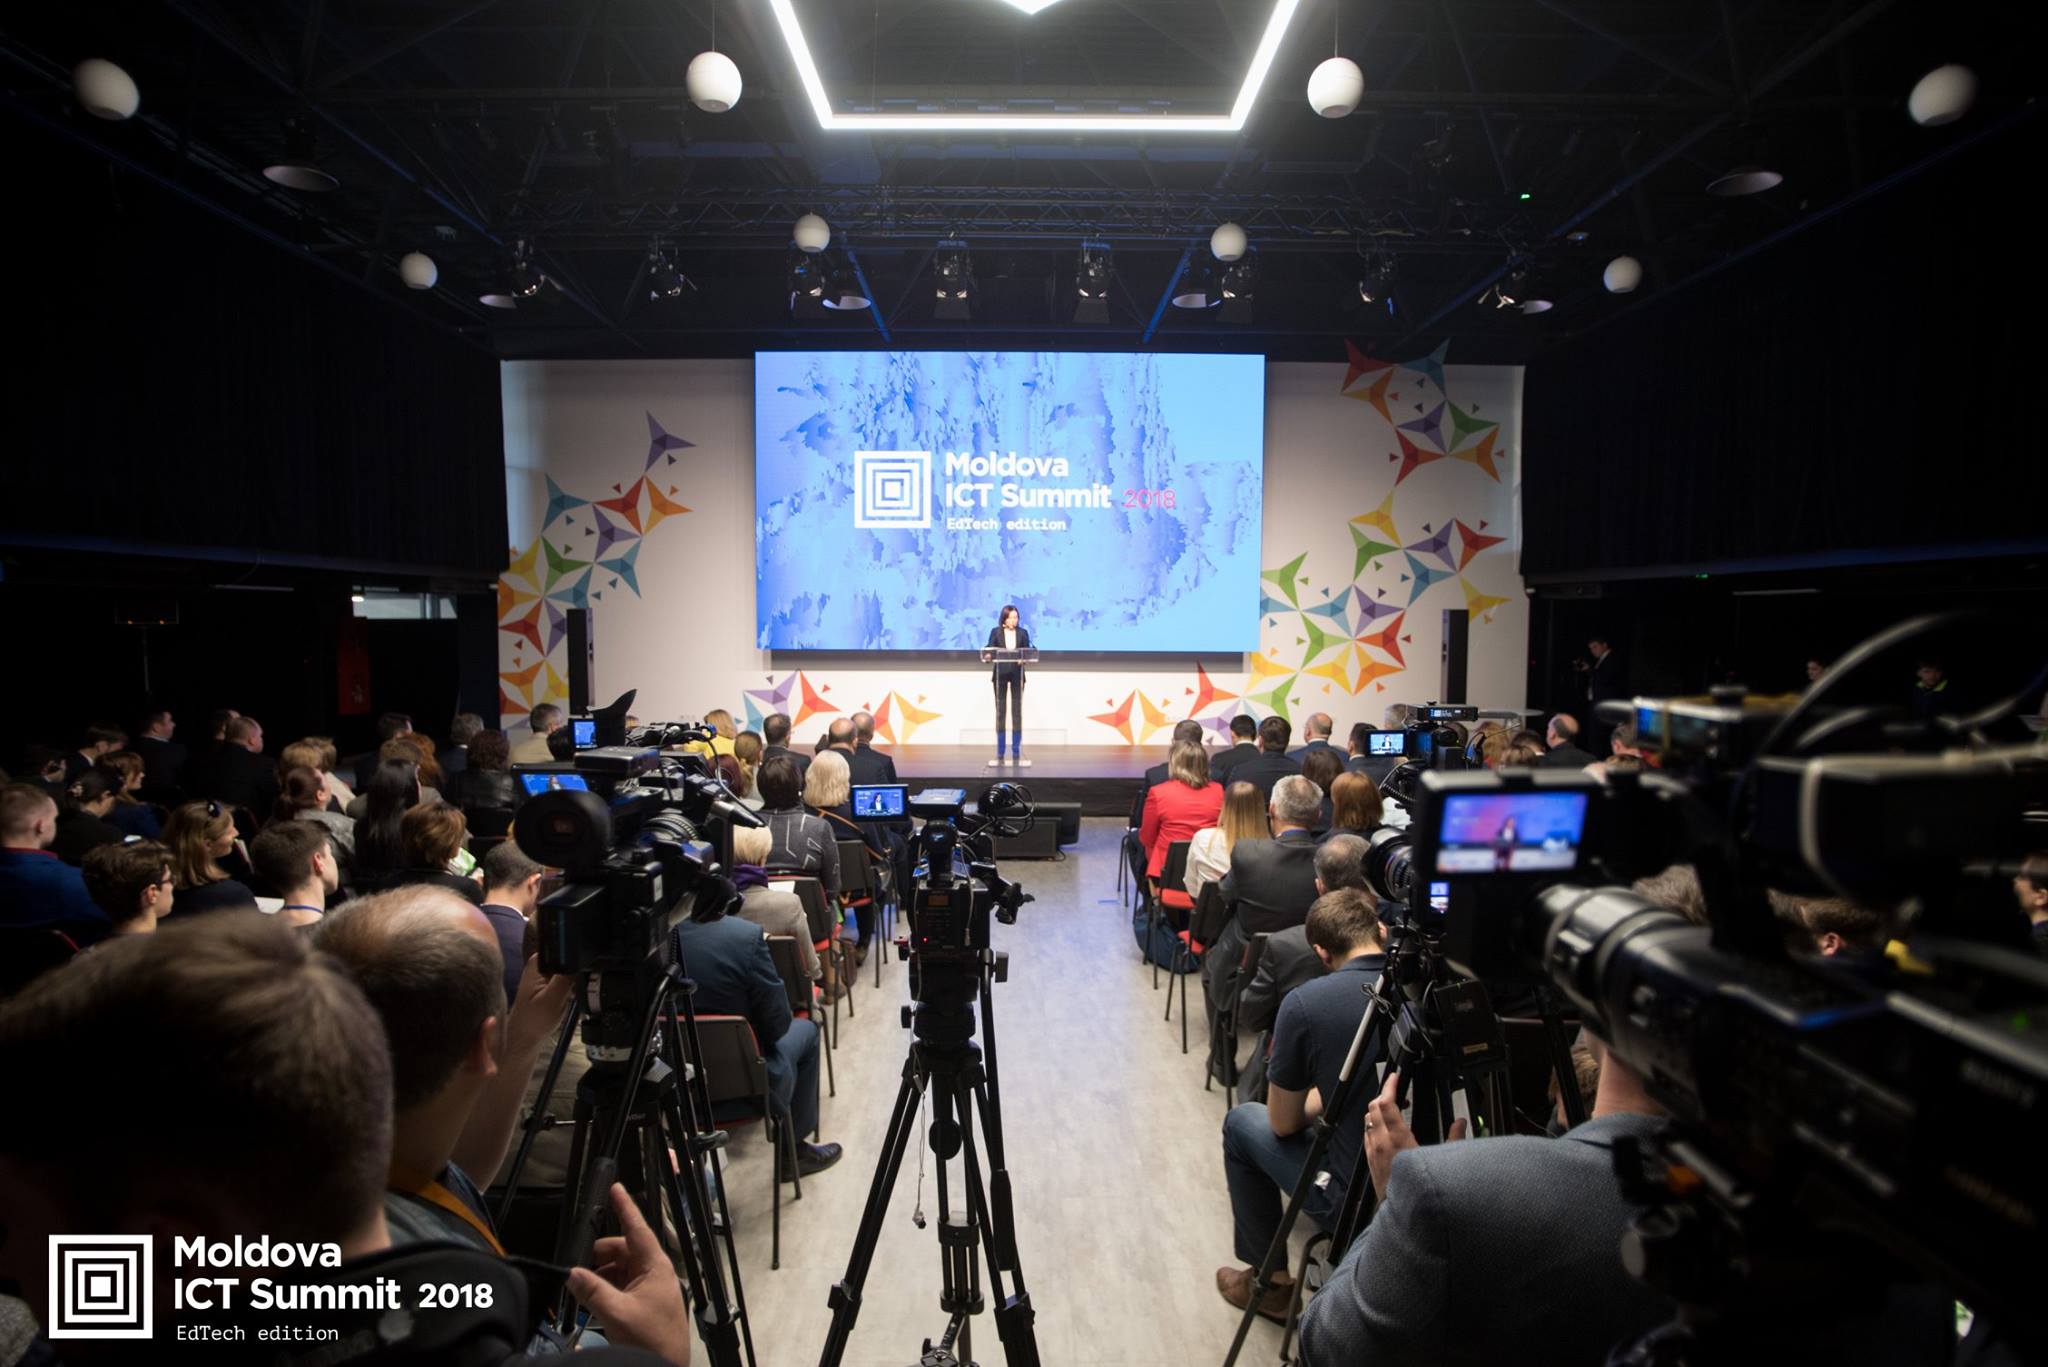 (Română) Prezentarea proiectului Academy+Moldova la Moldova ICT Summit 2018, ediția dedică educației digitale